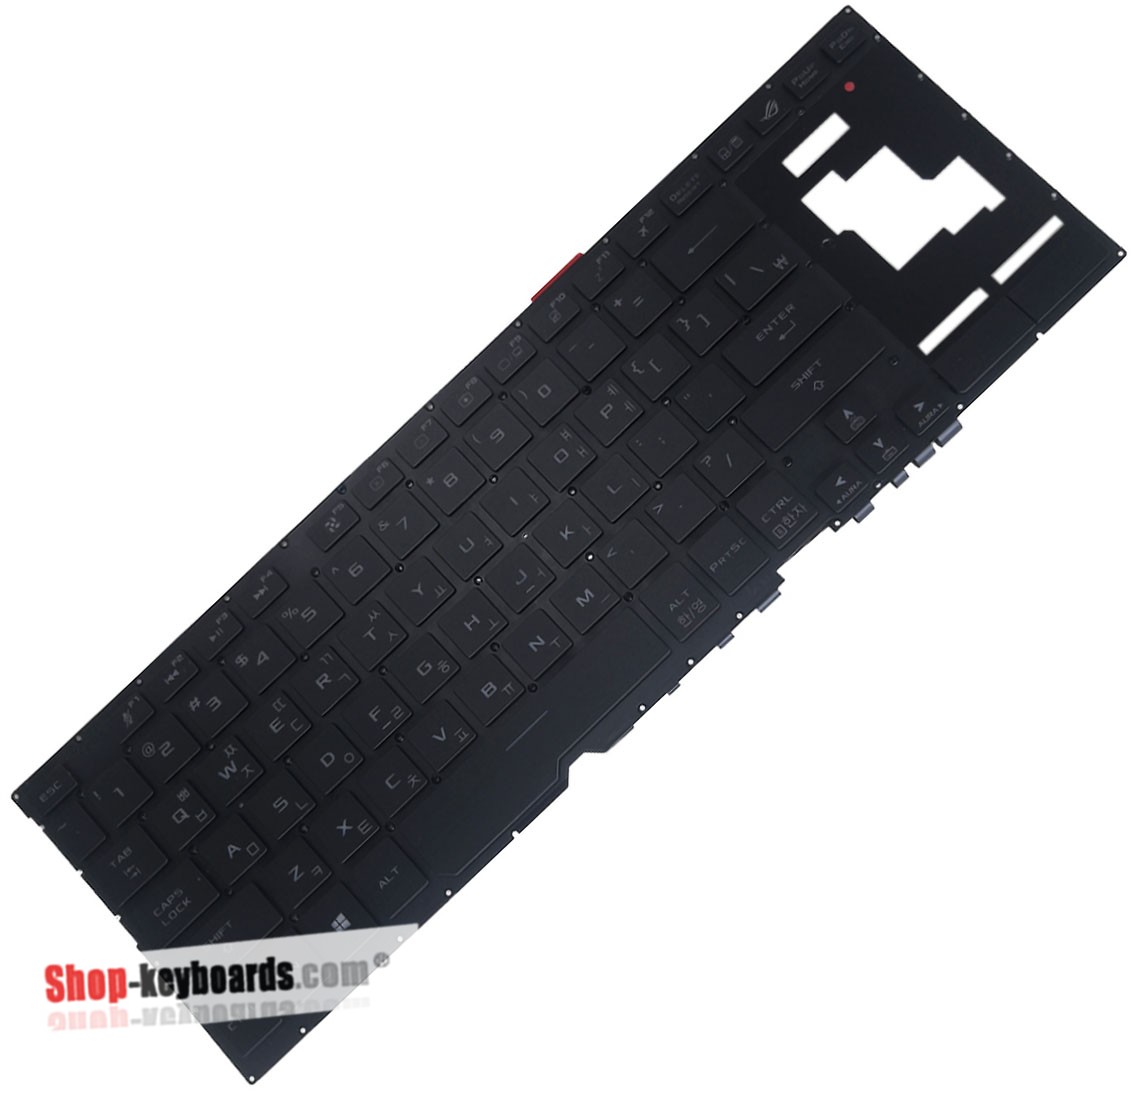 Asus 0KNR0-681AAR00  Keyboard replacement